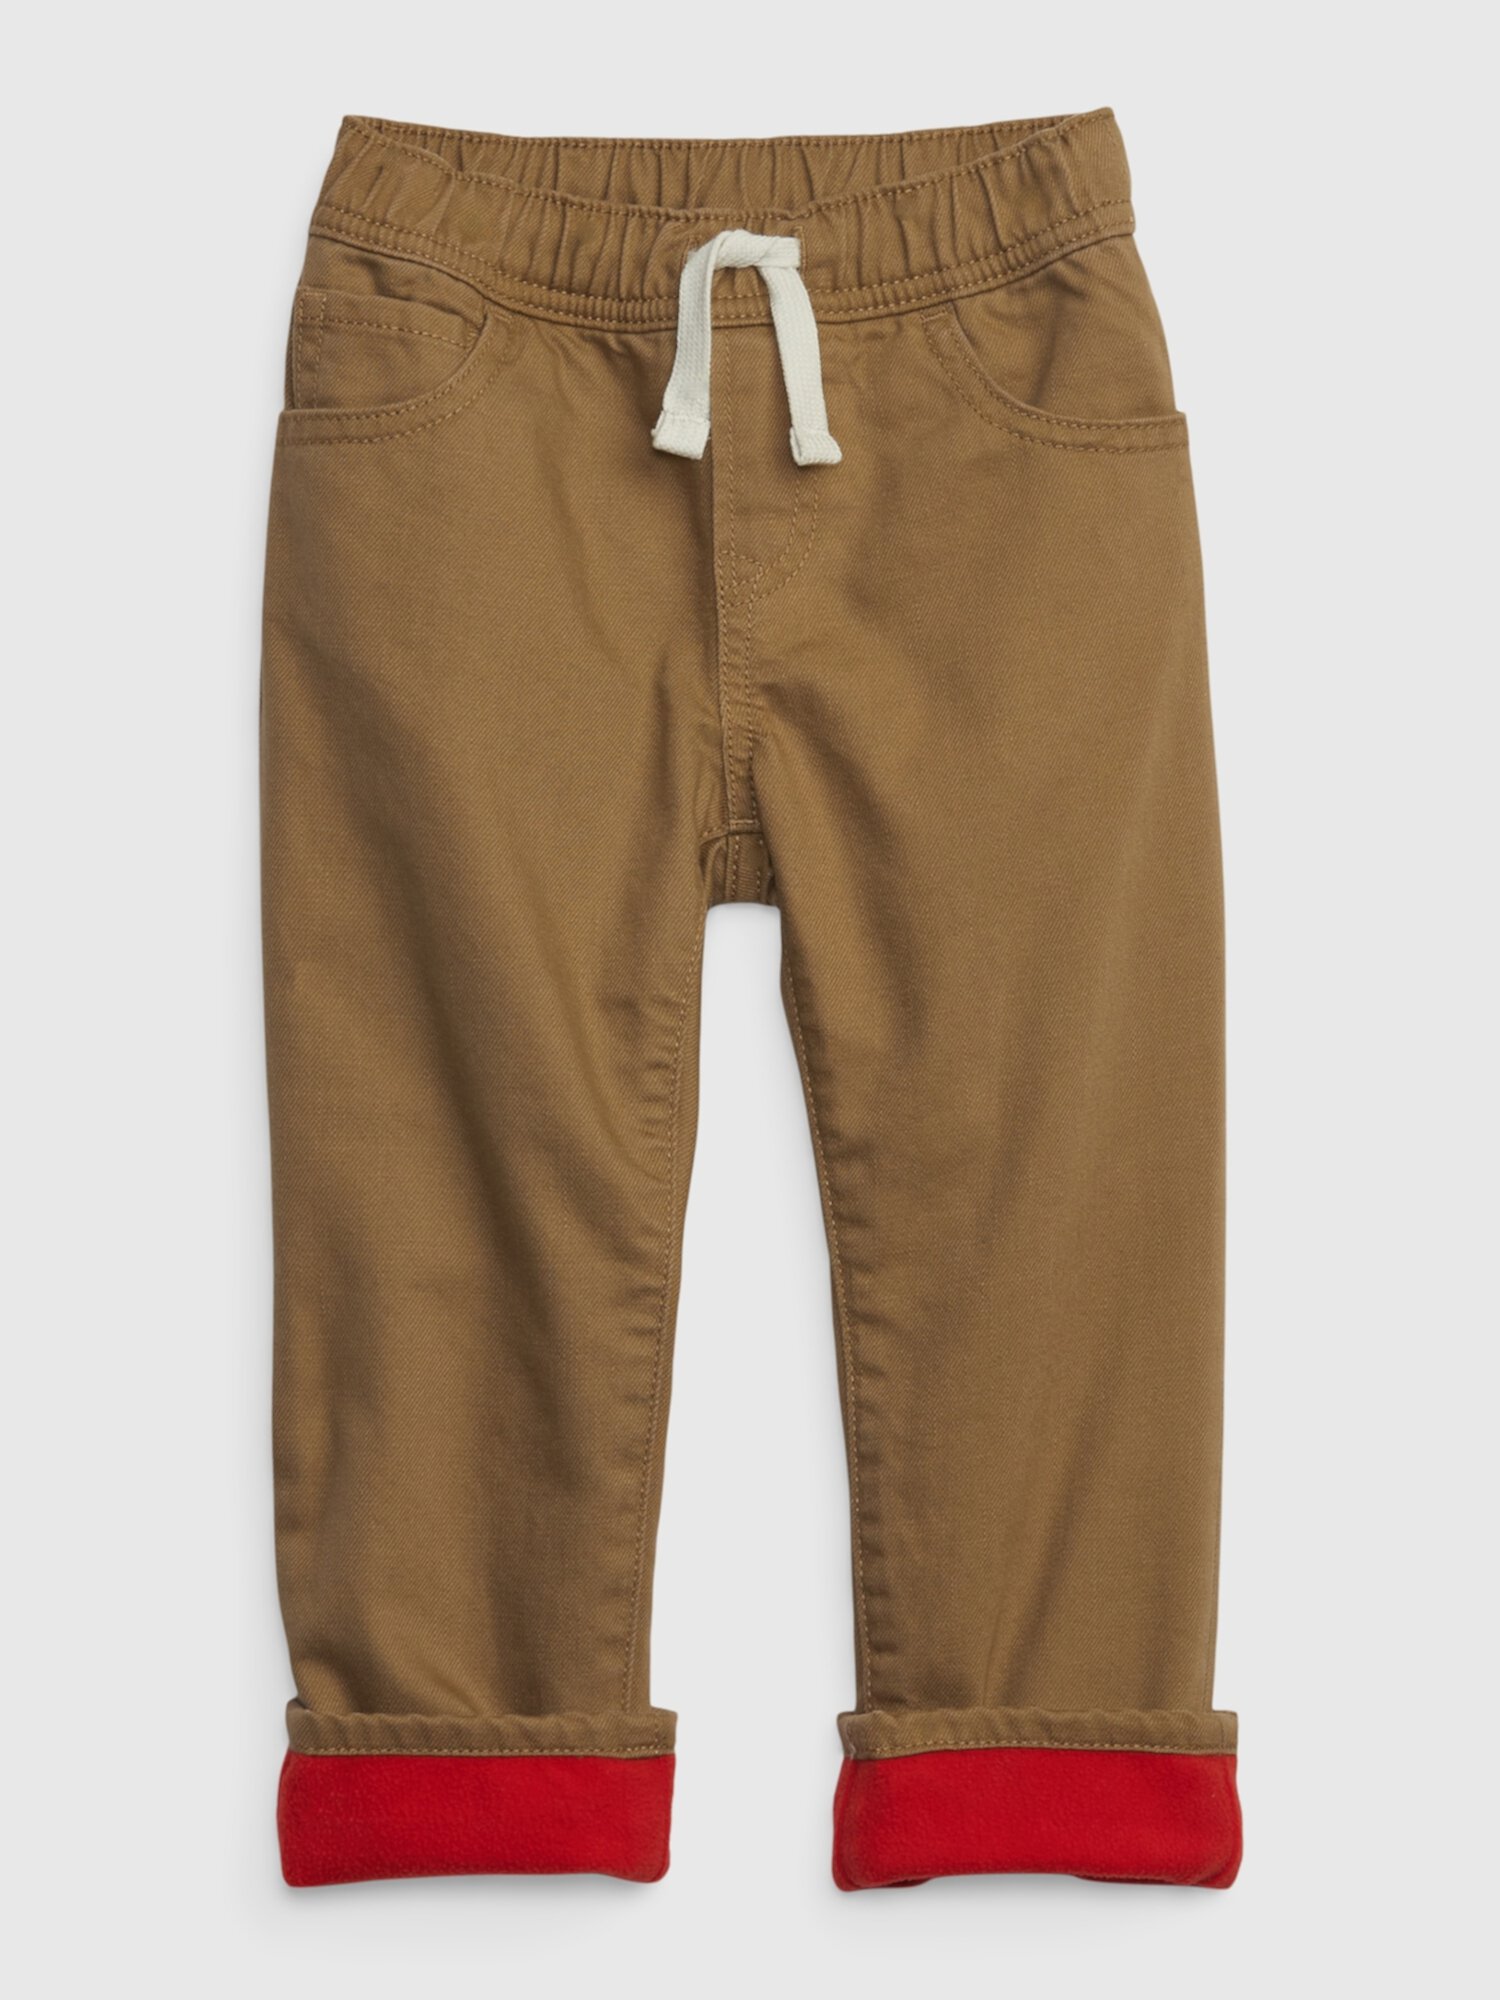 Узкие джинсы без застежек с подкладкой из флиса для малышей и тканью Washwell Gap